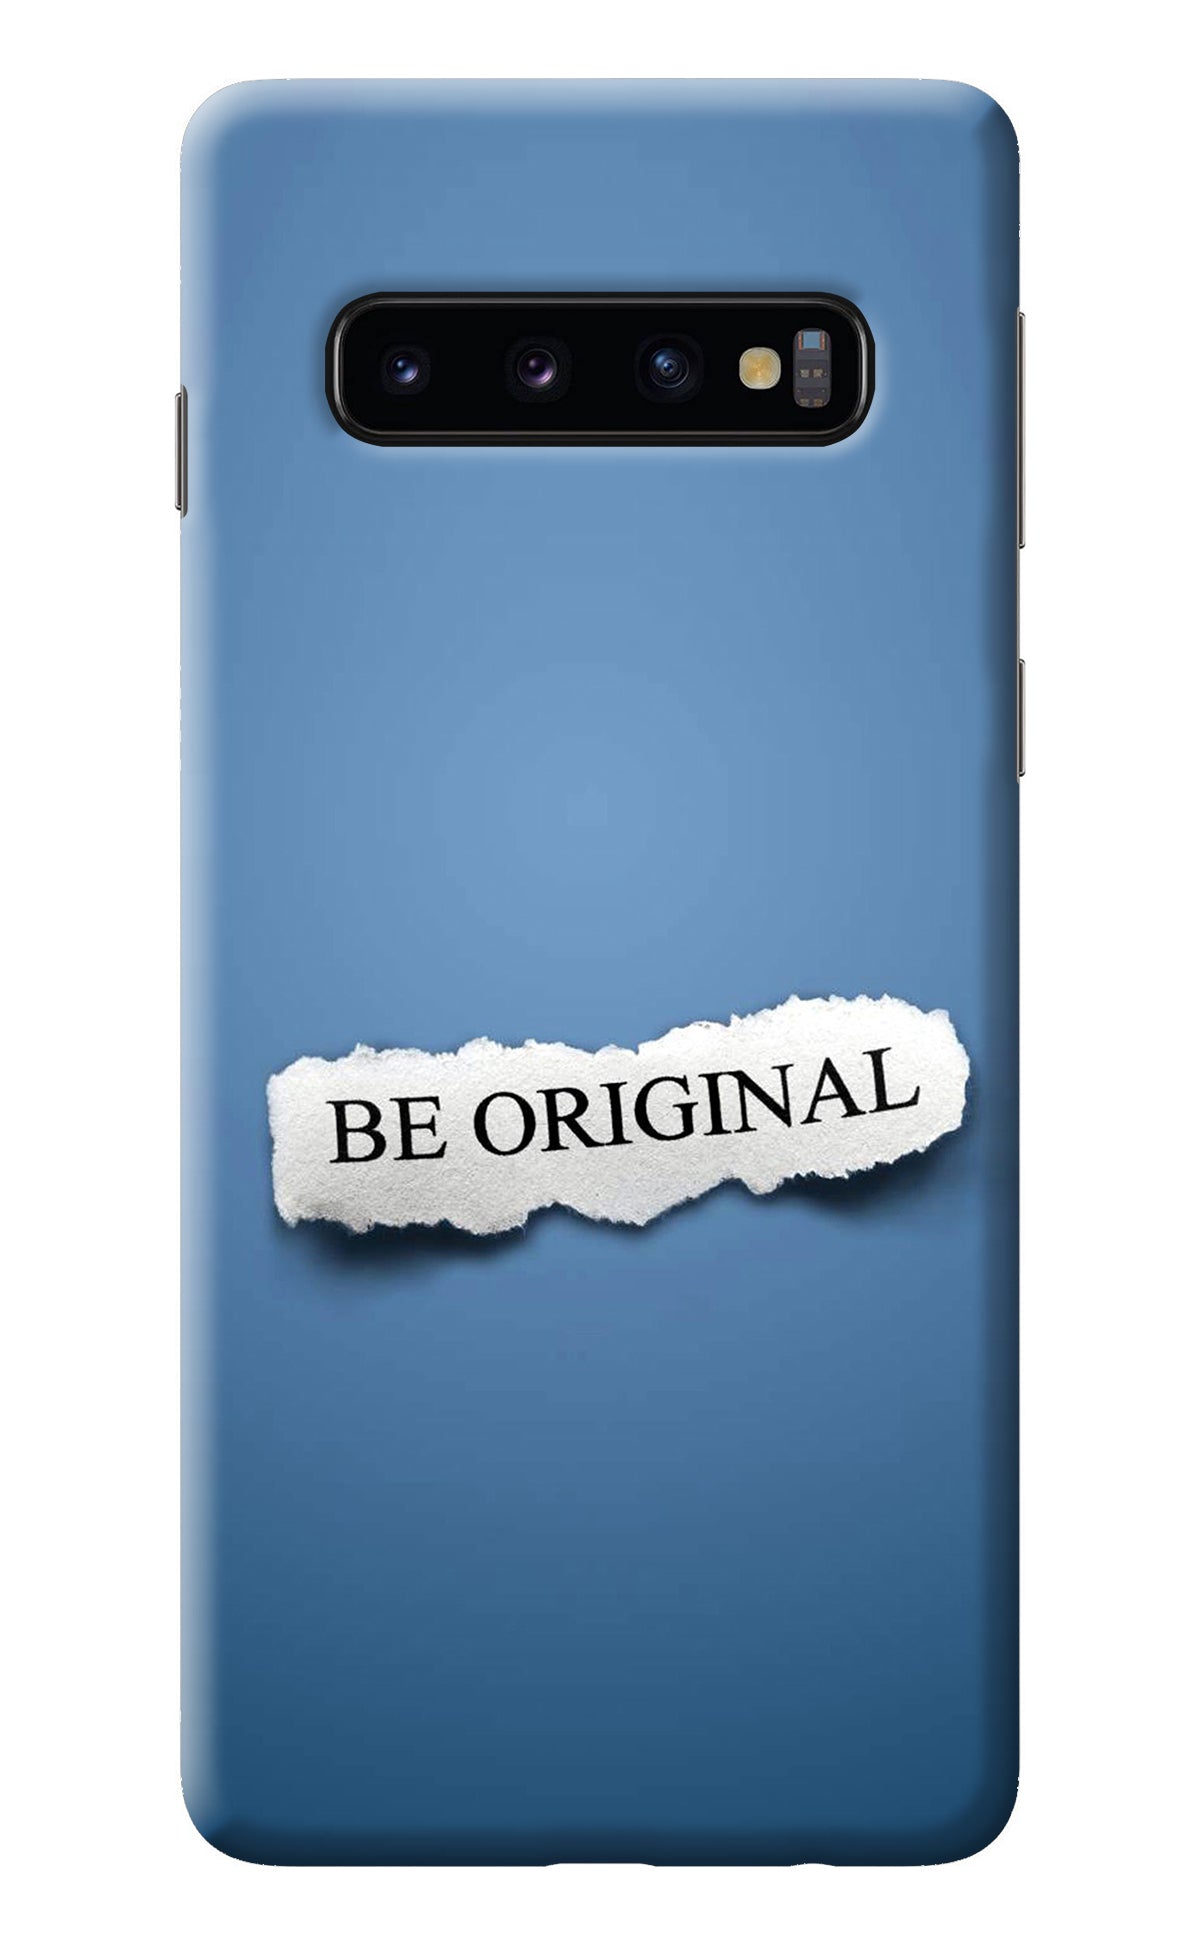 Be Original Samsung S10 Back Cover